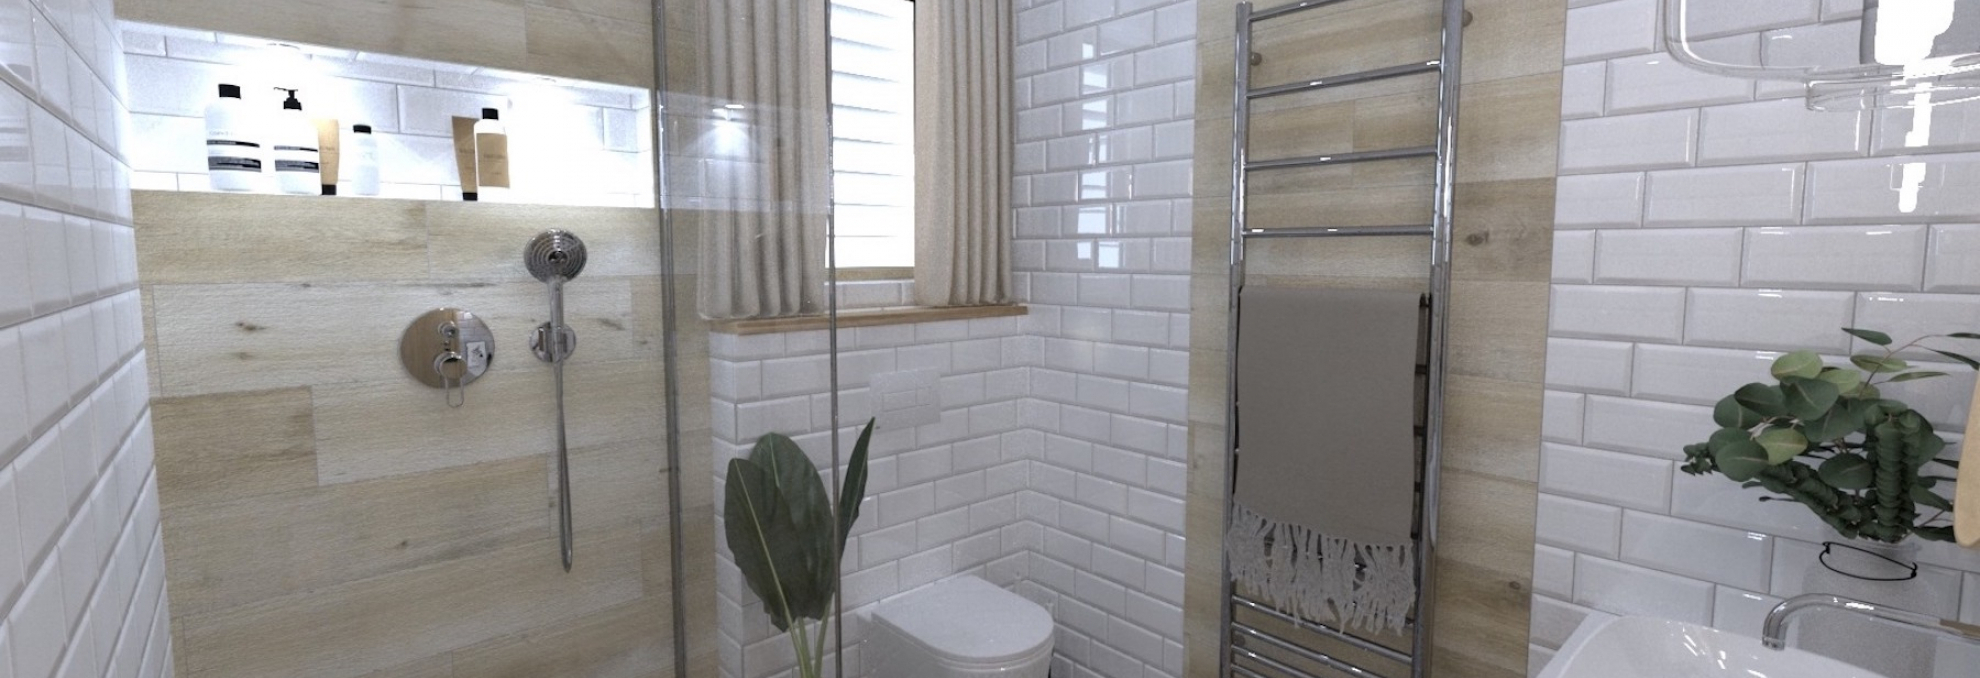 Vizualizace koupelny s bílým obkladem Marmi 3.0 a sérií v designu dřeva Saloon